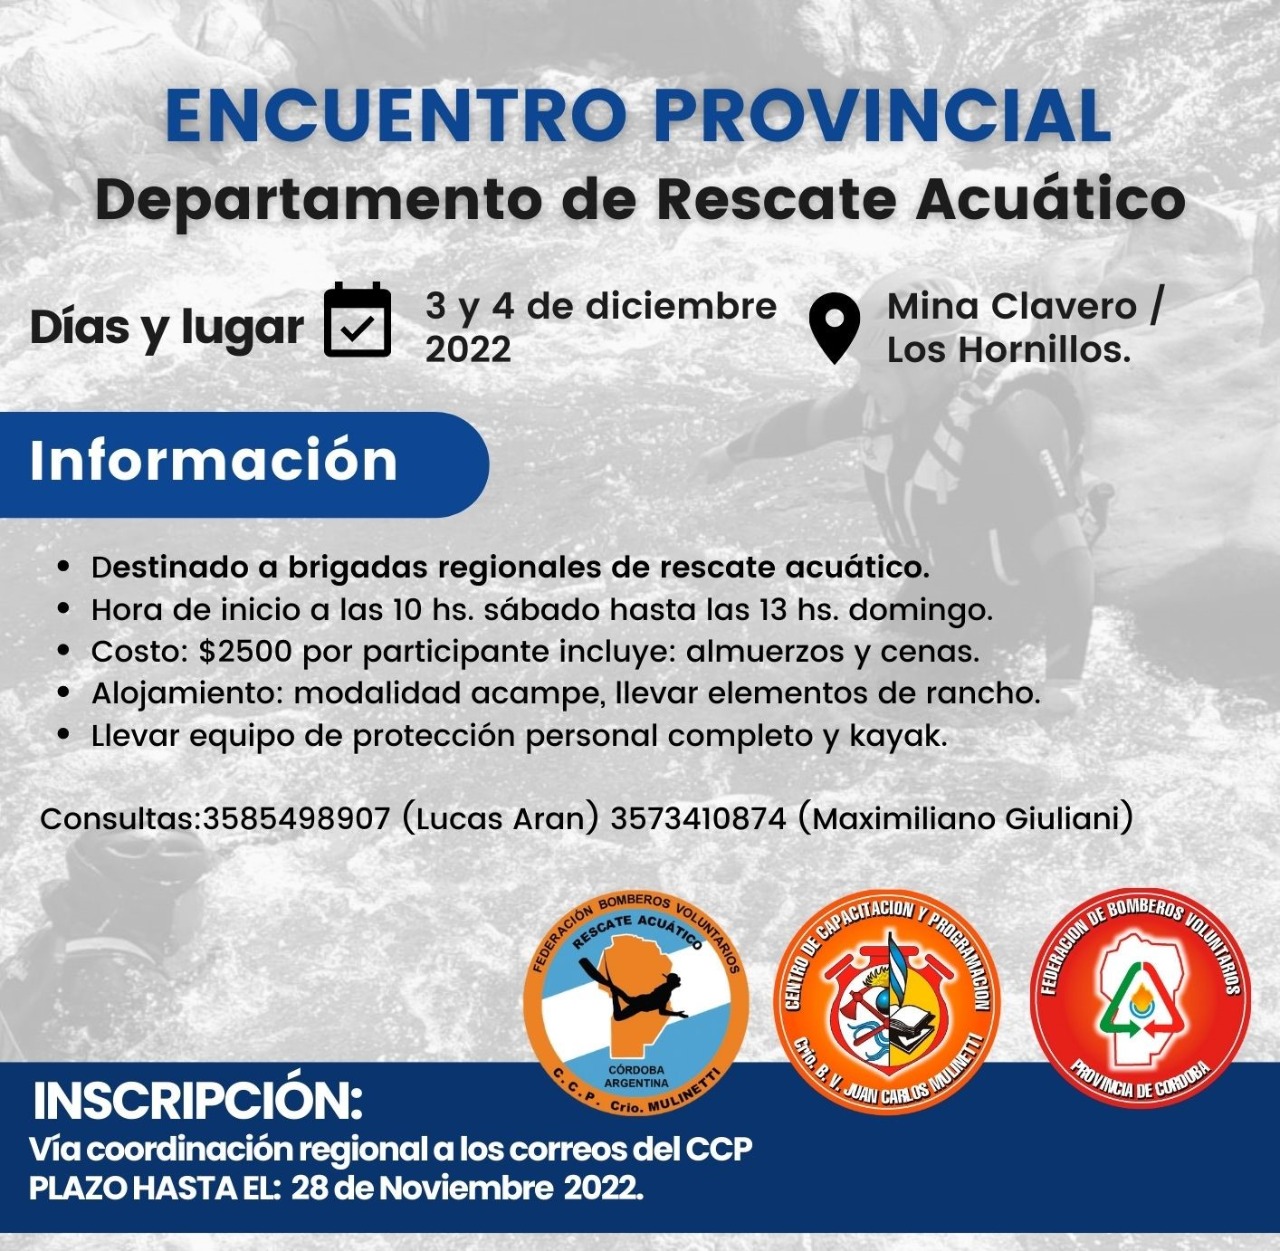 Nuevo Encuentro Provincial de Rescate Acuático